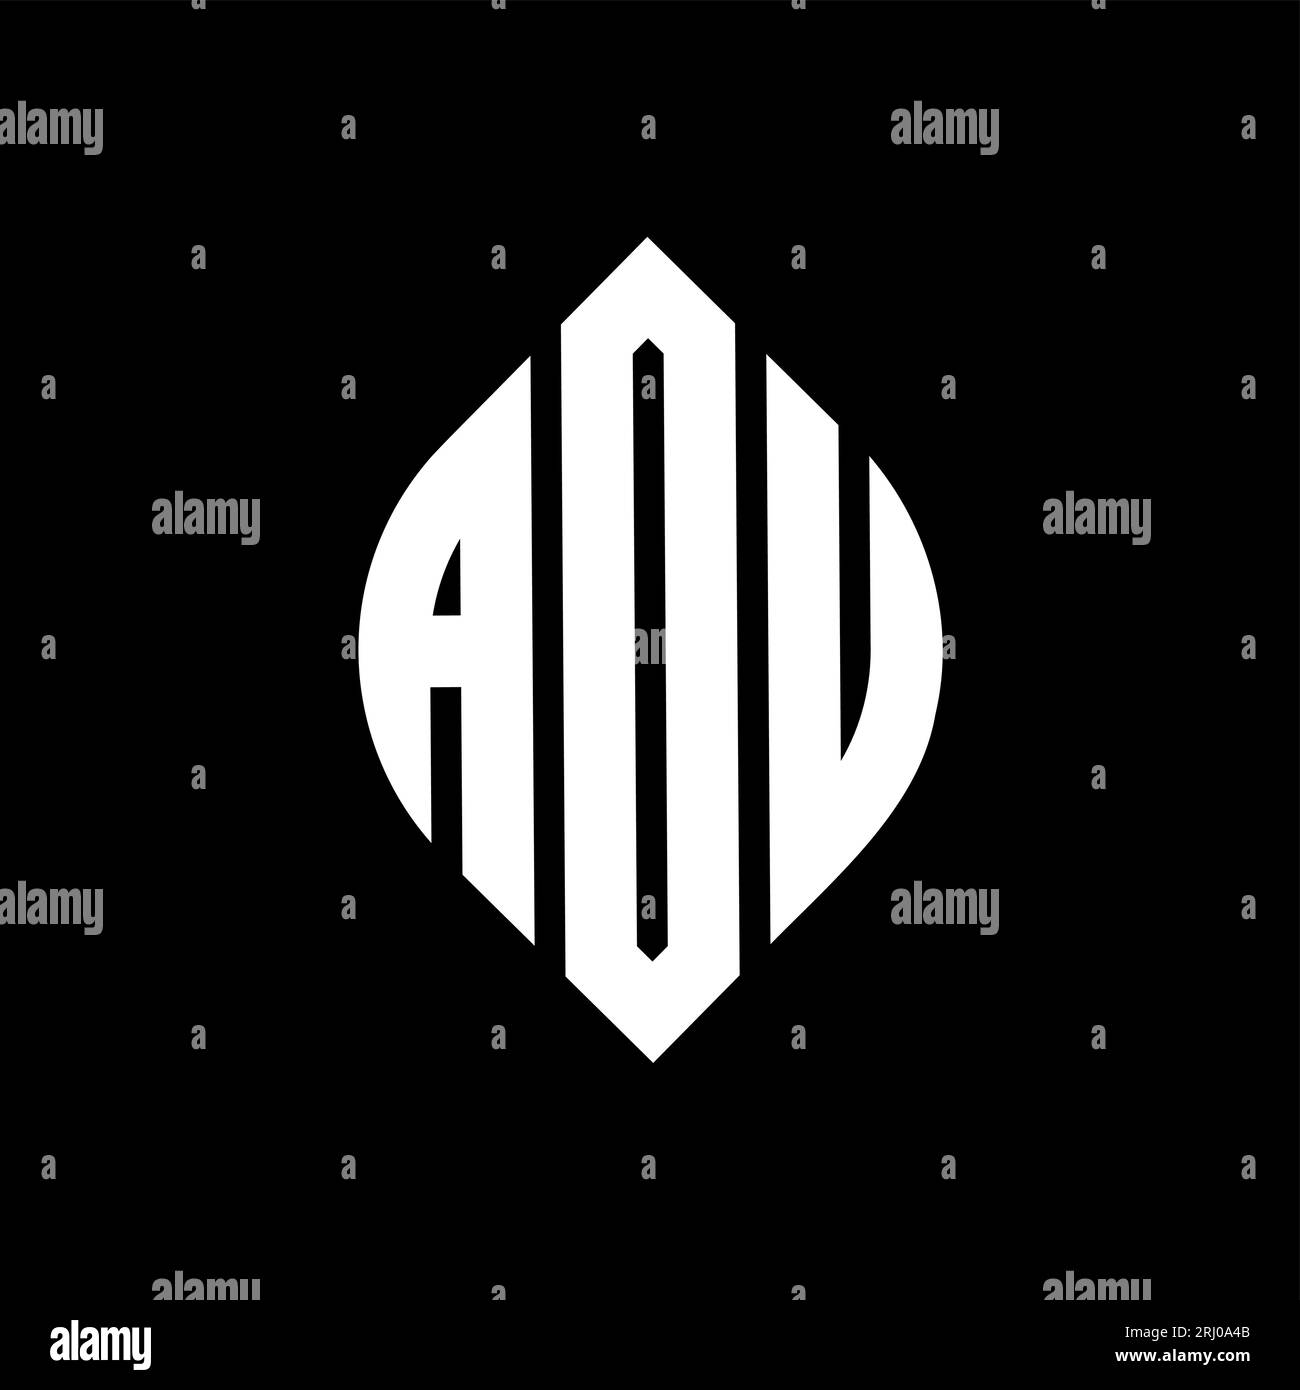 ADU-Logo mit kreisförmigem Buchstaben, Kreis- und Ellipsenform. ADU-Ellipsenbuchstaben im typografischen Stil. Die drei Initialen bilden ein kreisförmiges Logo. ADU-CI Stock Vektor